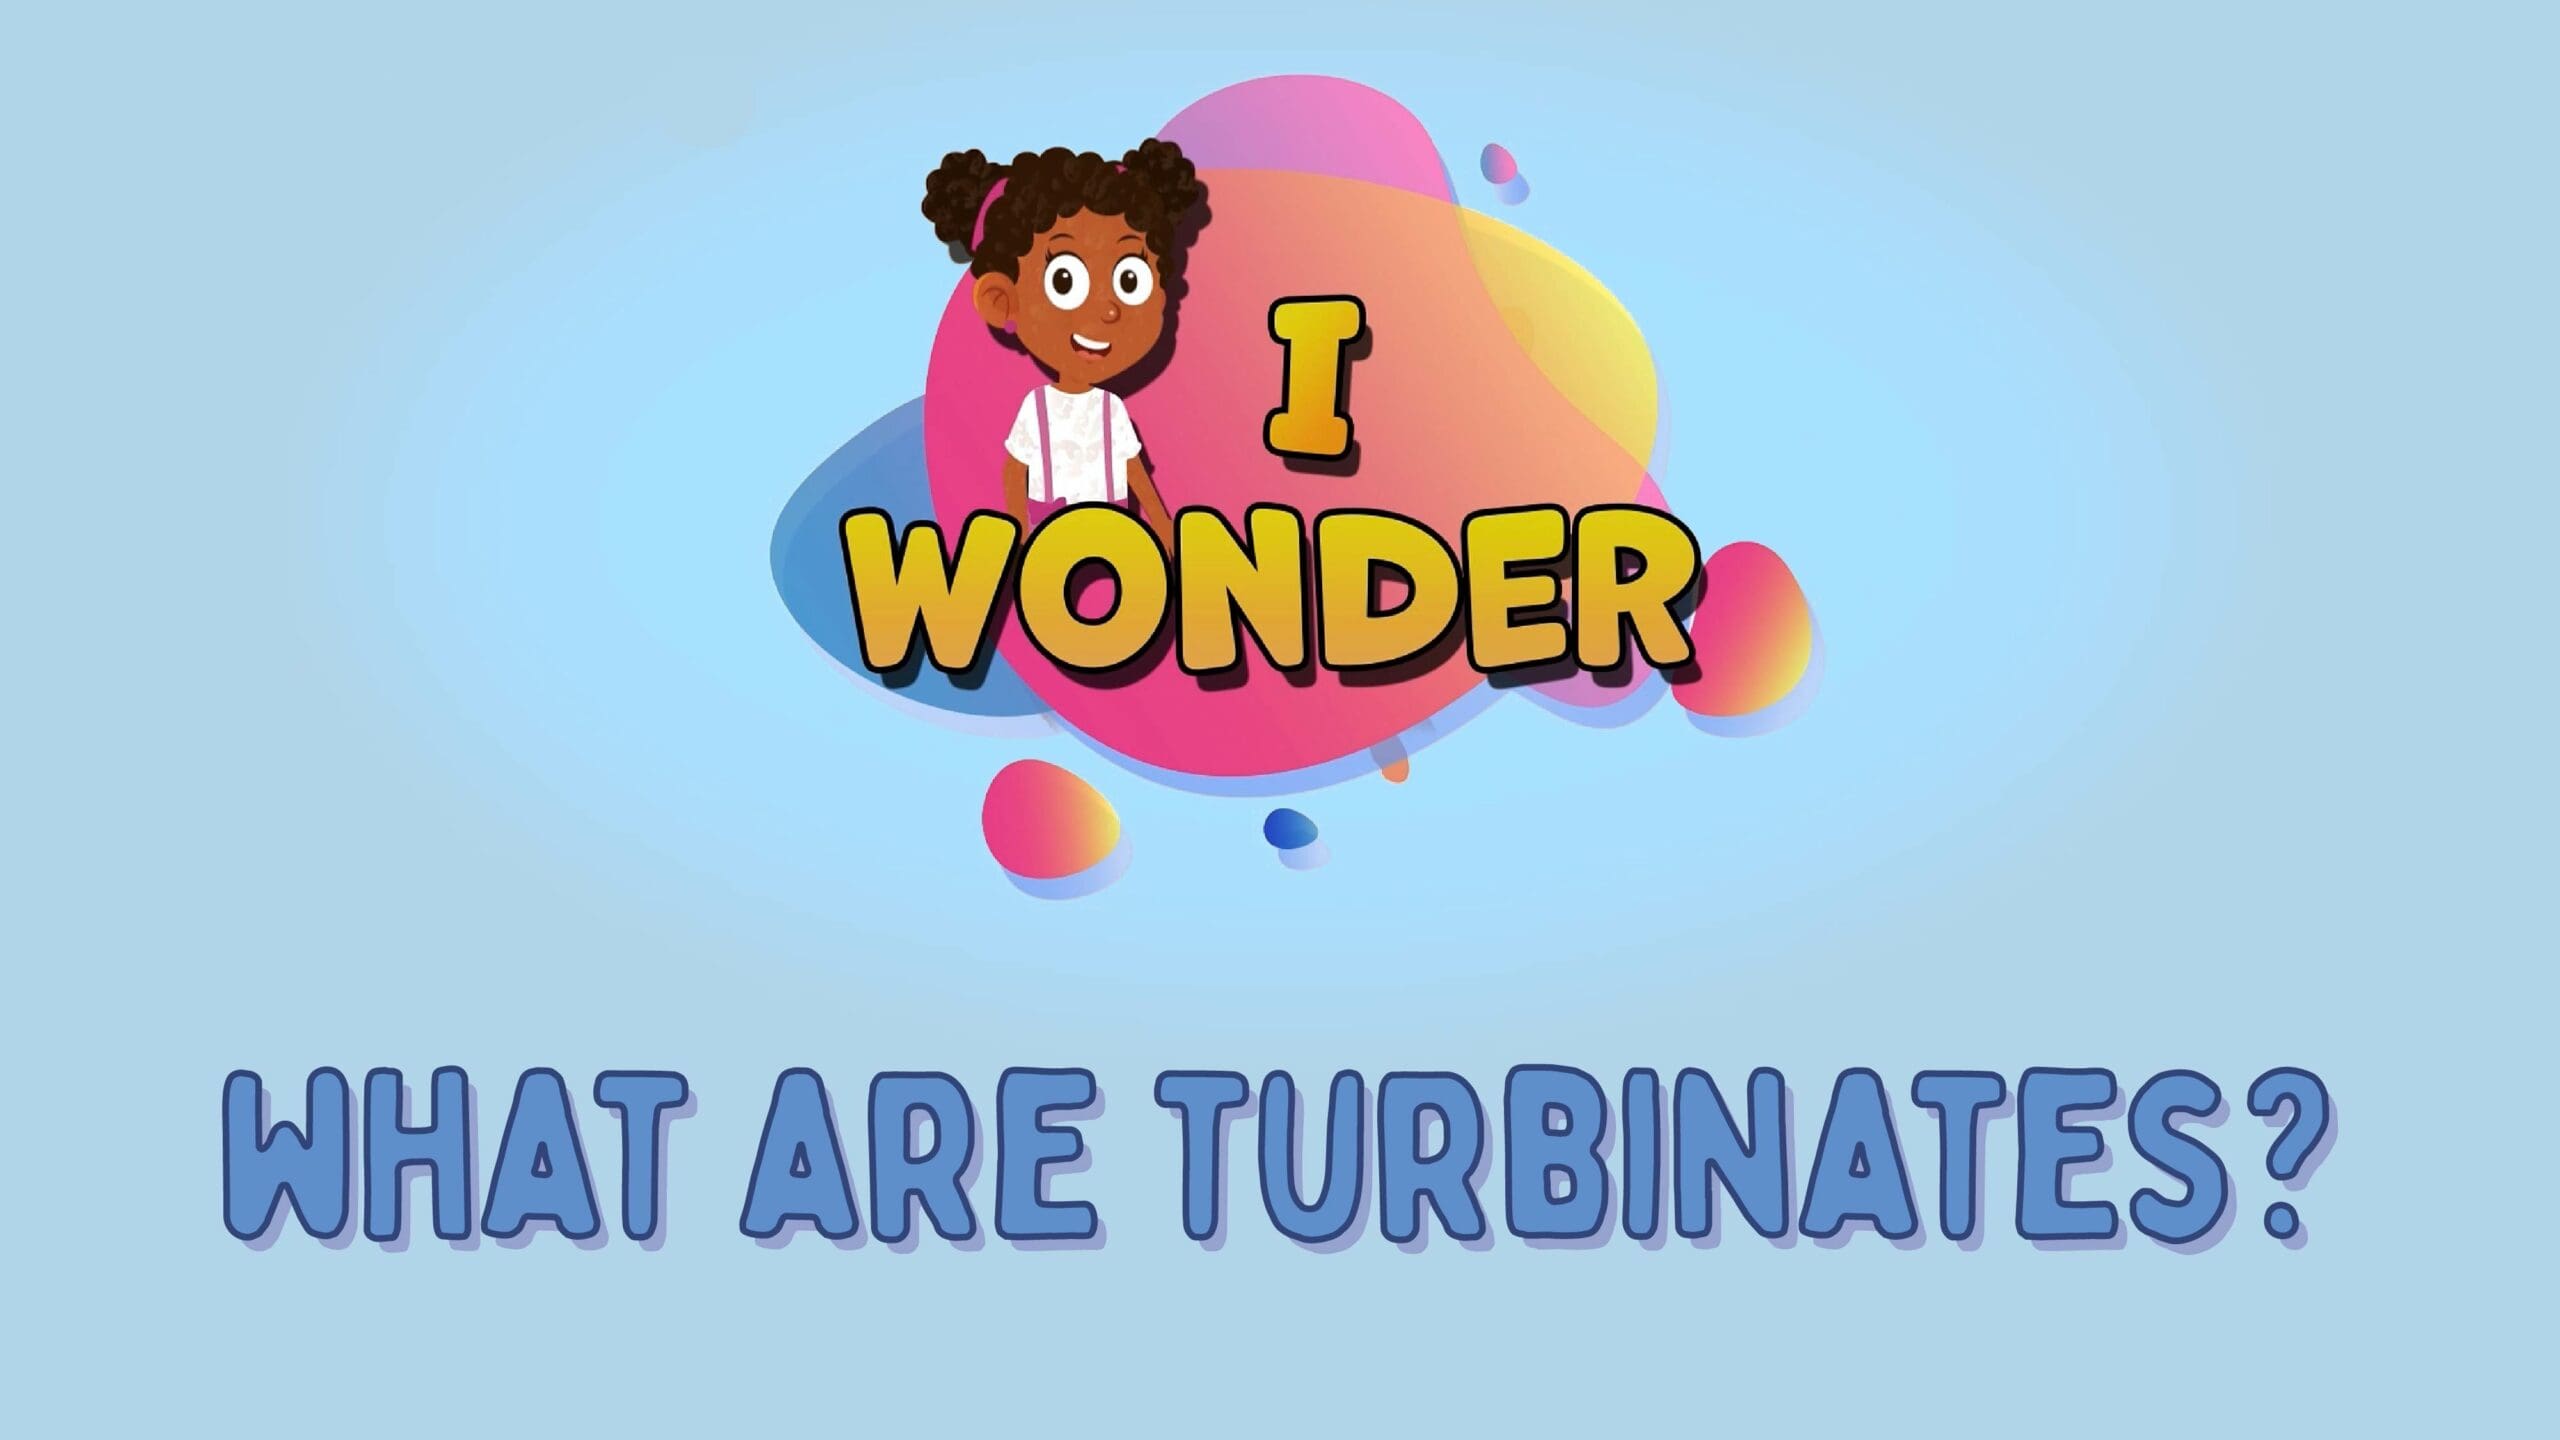 What Are Turbinates?